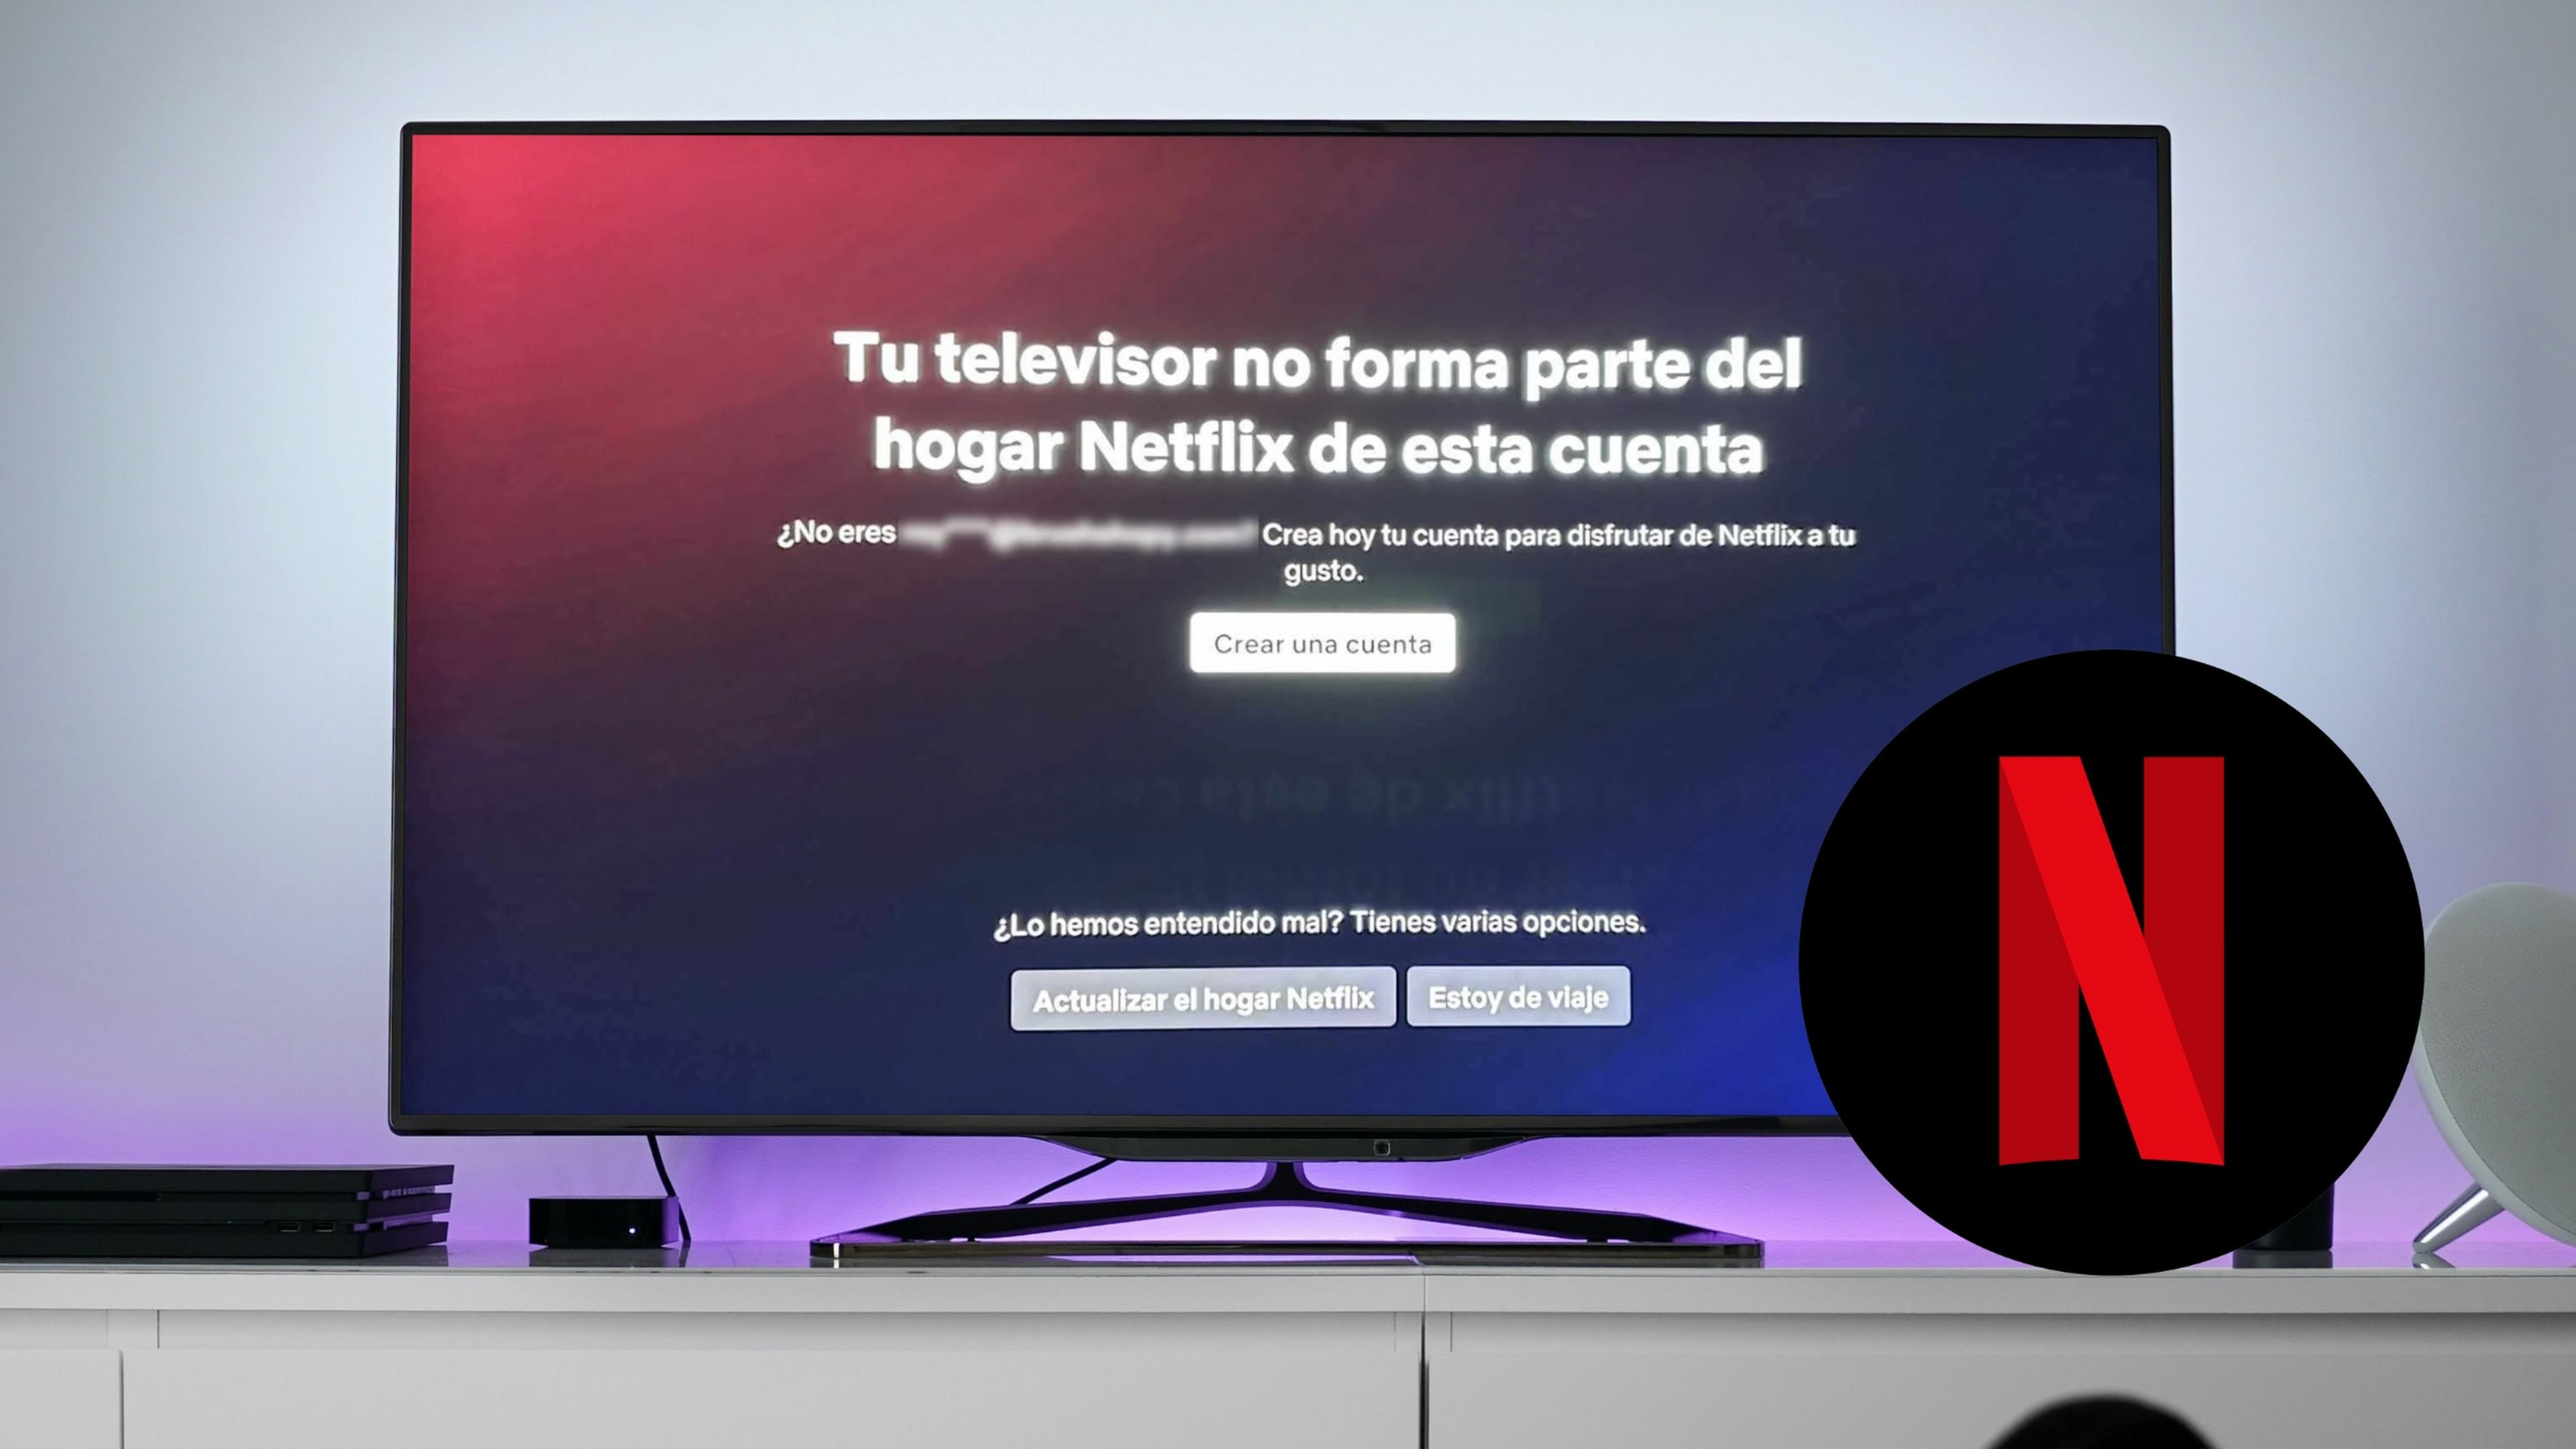 Tu televisor no forma parte del hogar Netflix: ¿qué significa y cómo solucionarlo?